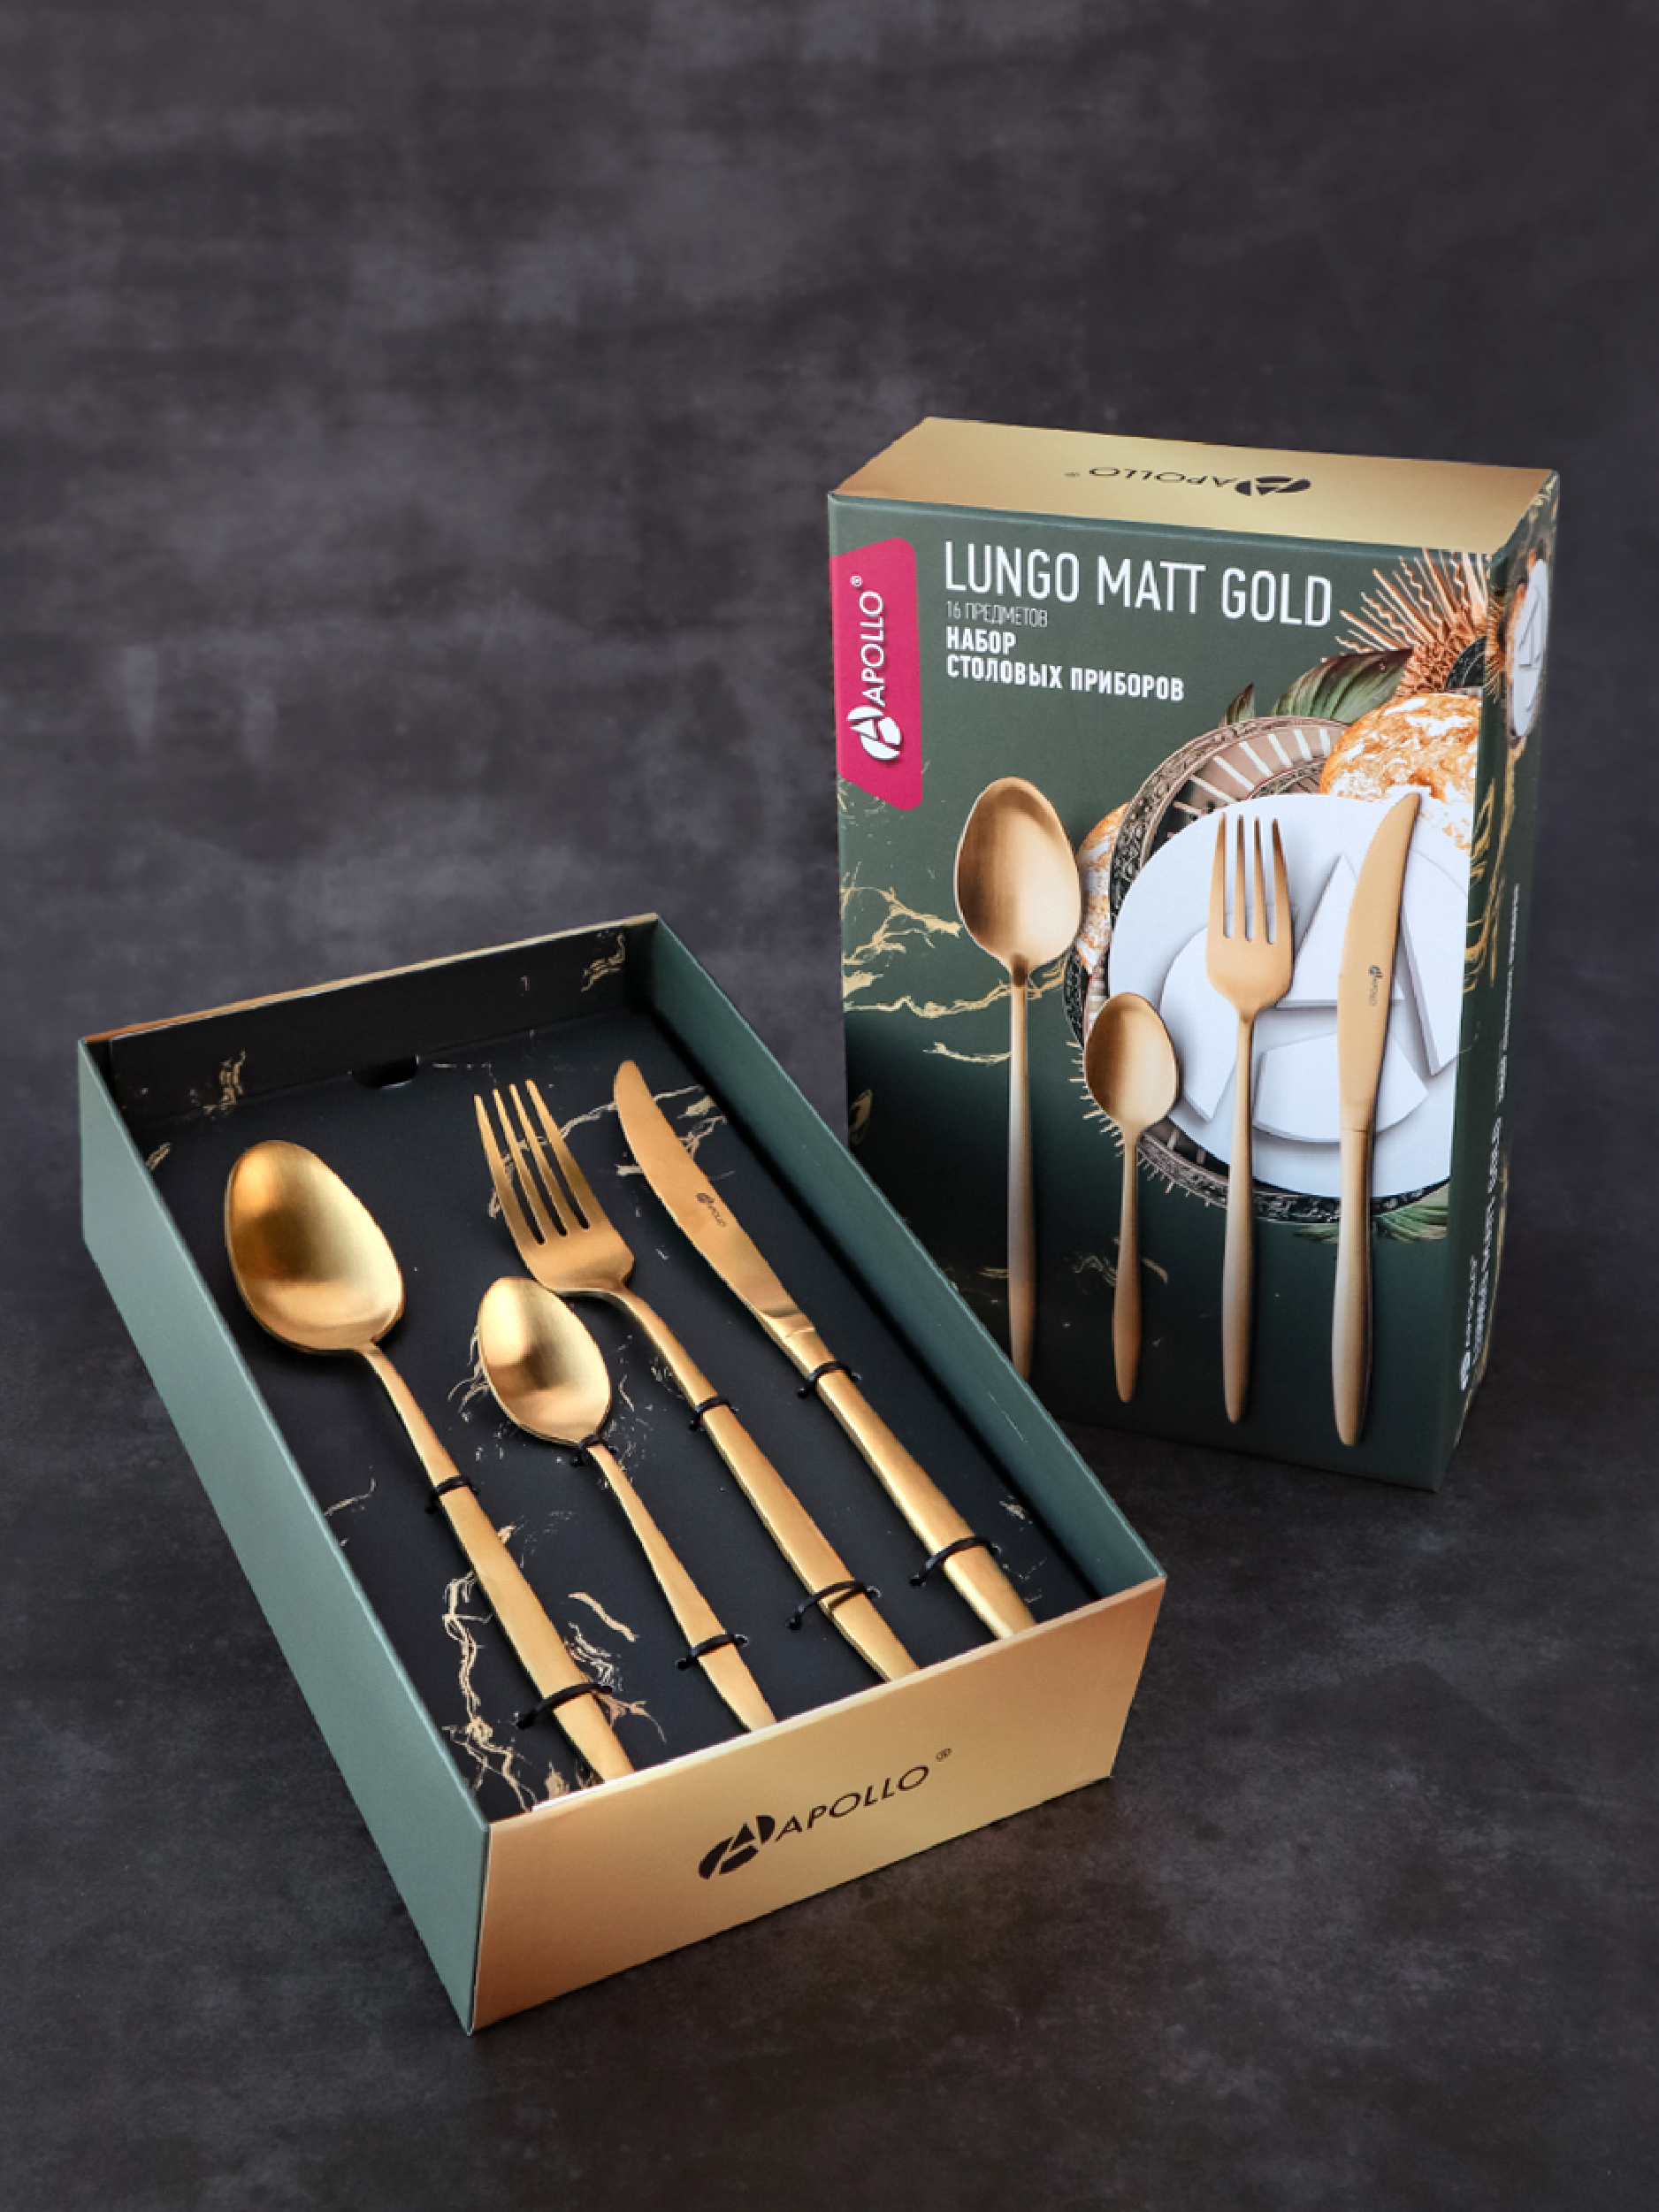 Набор столовых приборов 16 предметов Apollo “Lungo Matt Gold” LMG-16 золотой